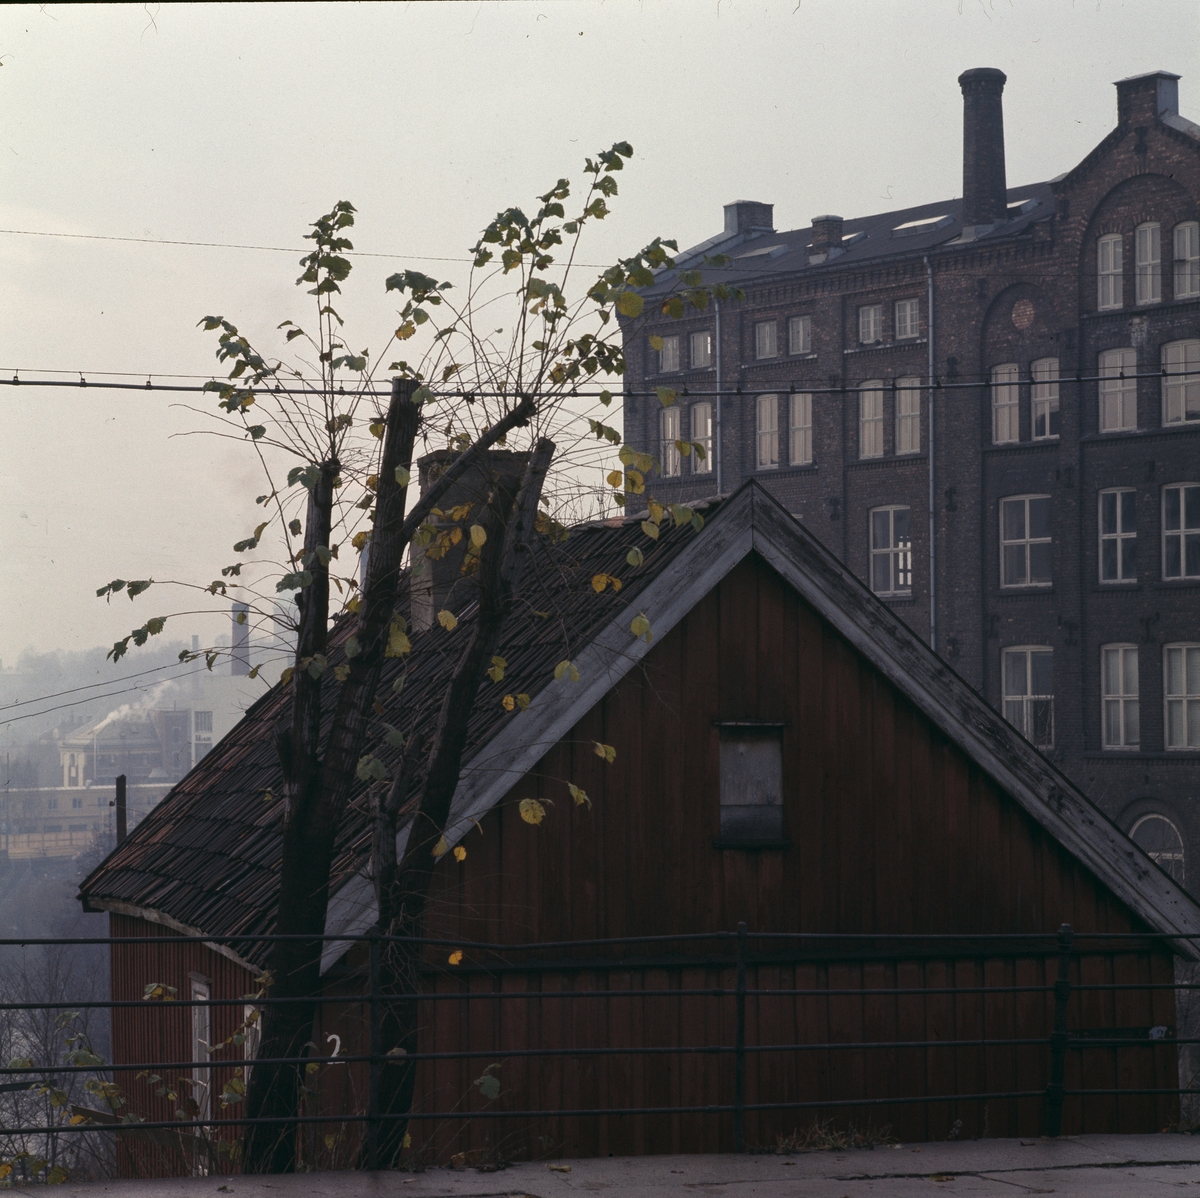 Bygninger ved Beyerfoss ved Akerselva fotografert i november 1976. I forgrunnen et lite trehus, nå "Hønse-Lovisas" hus. I bakgrunnen sees fabrikkbygninger tidligere brukt av Hjula veveri og Knut Graahs veveri og spinneri. 